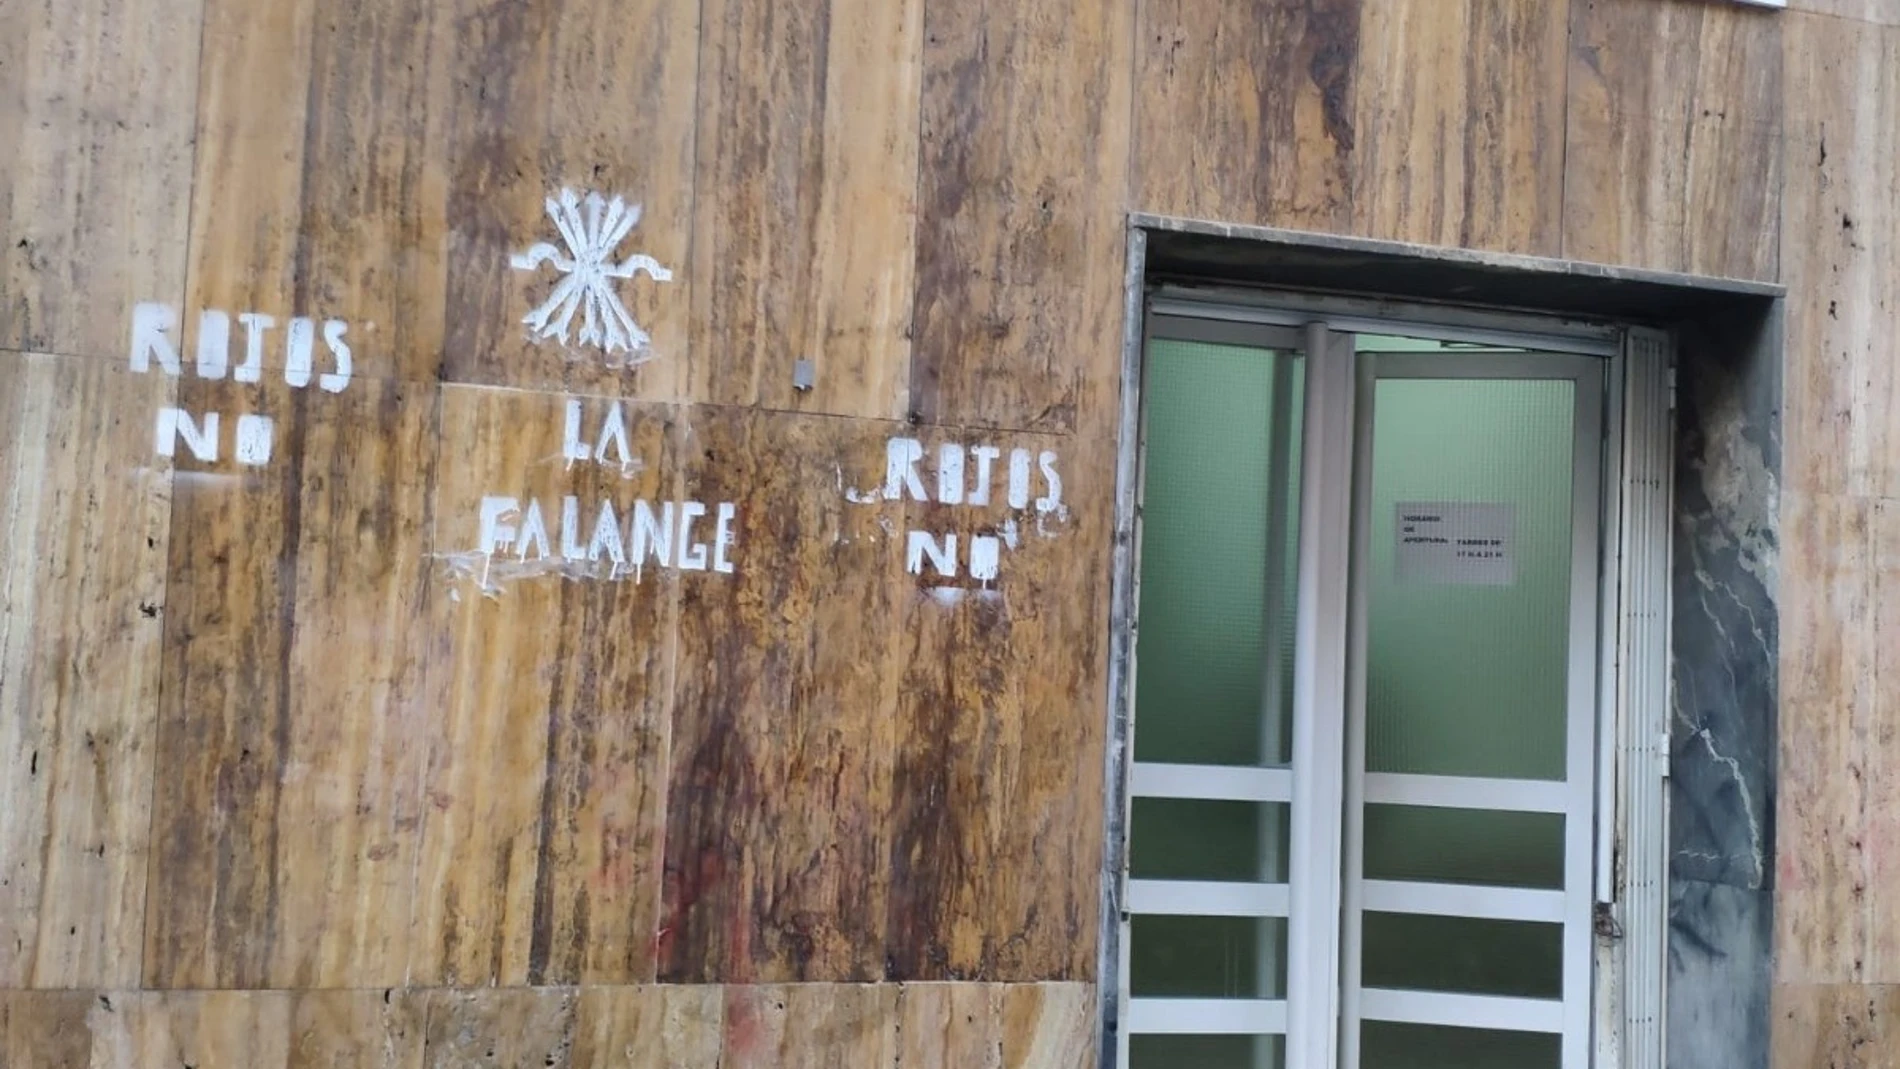 El PSPV denuncia nuevas pintadas en su sede: "Nadie nos van a silenciar con sus mensajes llenos de odio"